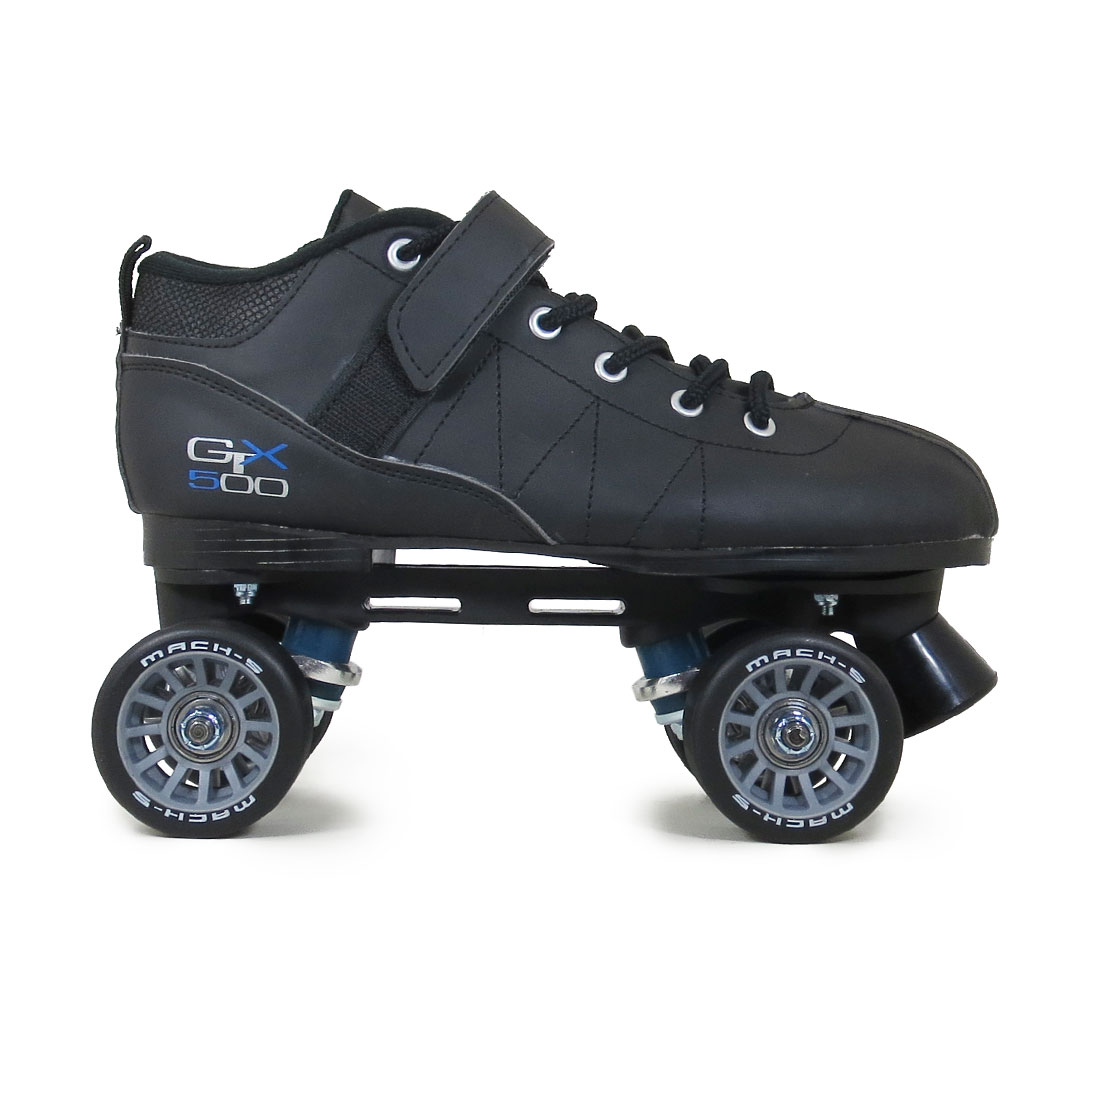 Pacer GTX-500 Mach-5 Roller Skates Black 